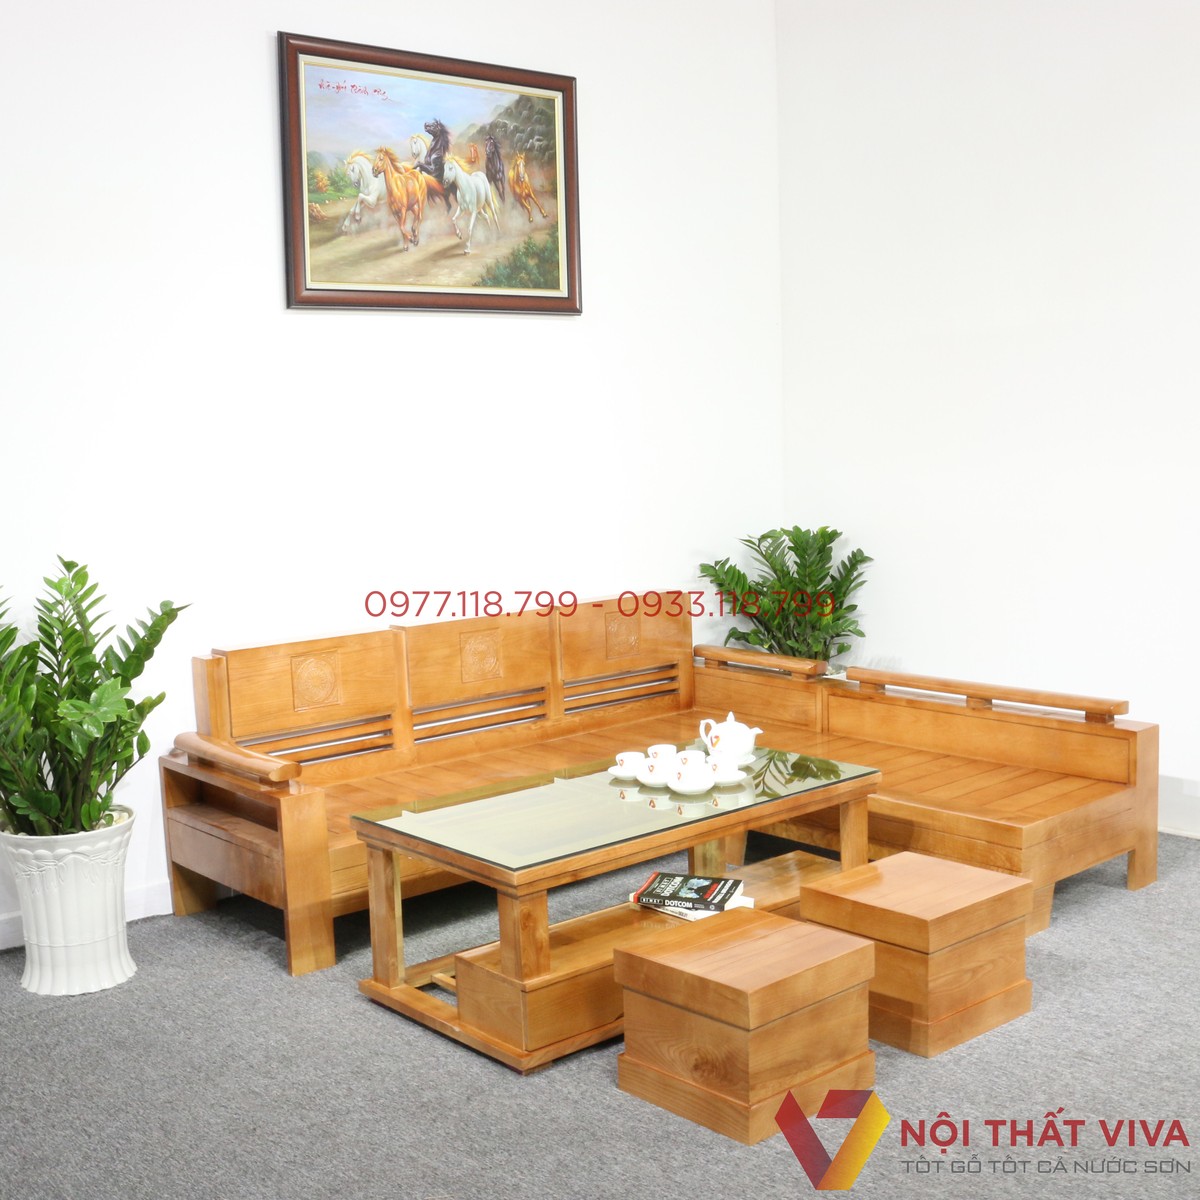 Ghế sofa gỗ giá rẻ đã trở thành sự lựa chọn hàng đầu của người tiêu dùng. Với chất liệu gỗ tự nhiên cao cấp và kiểu dáng đơn giản, bền đẹp, giá thành hợp lý, sản phẩm đang làm hái được nhiều trái tim khách hàng. Truy cập hình ảnh liên quan để trải nghiệm các mẫu ghế sofa gỗ giá rẻ.